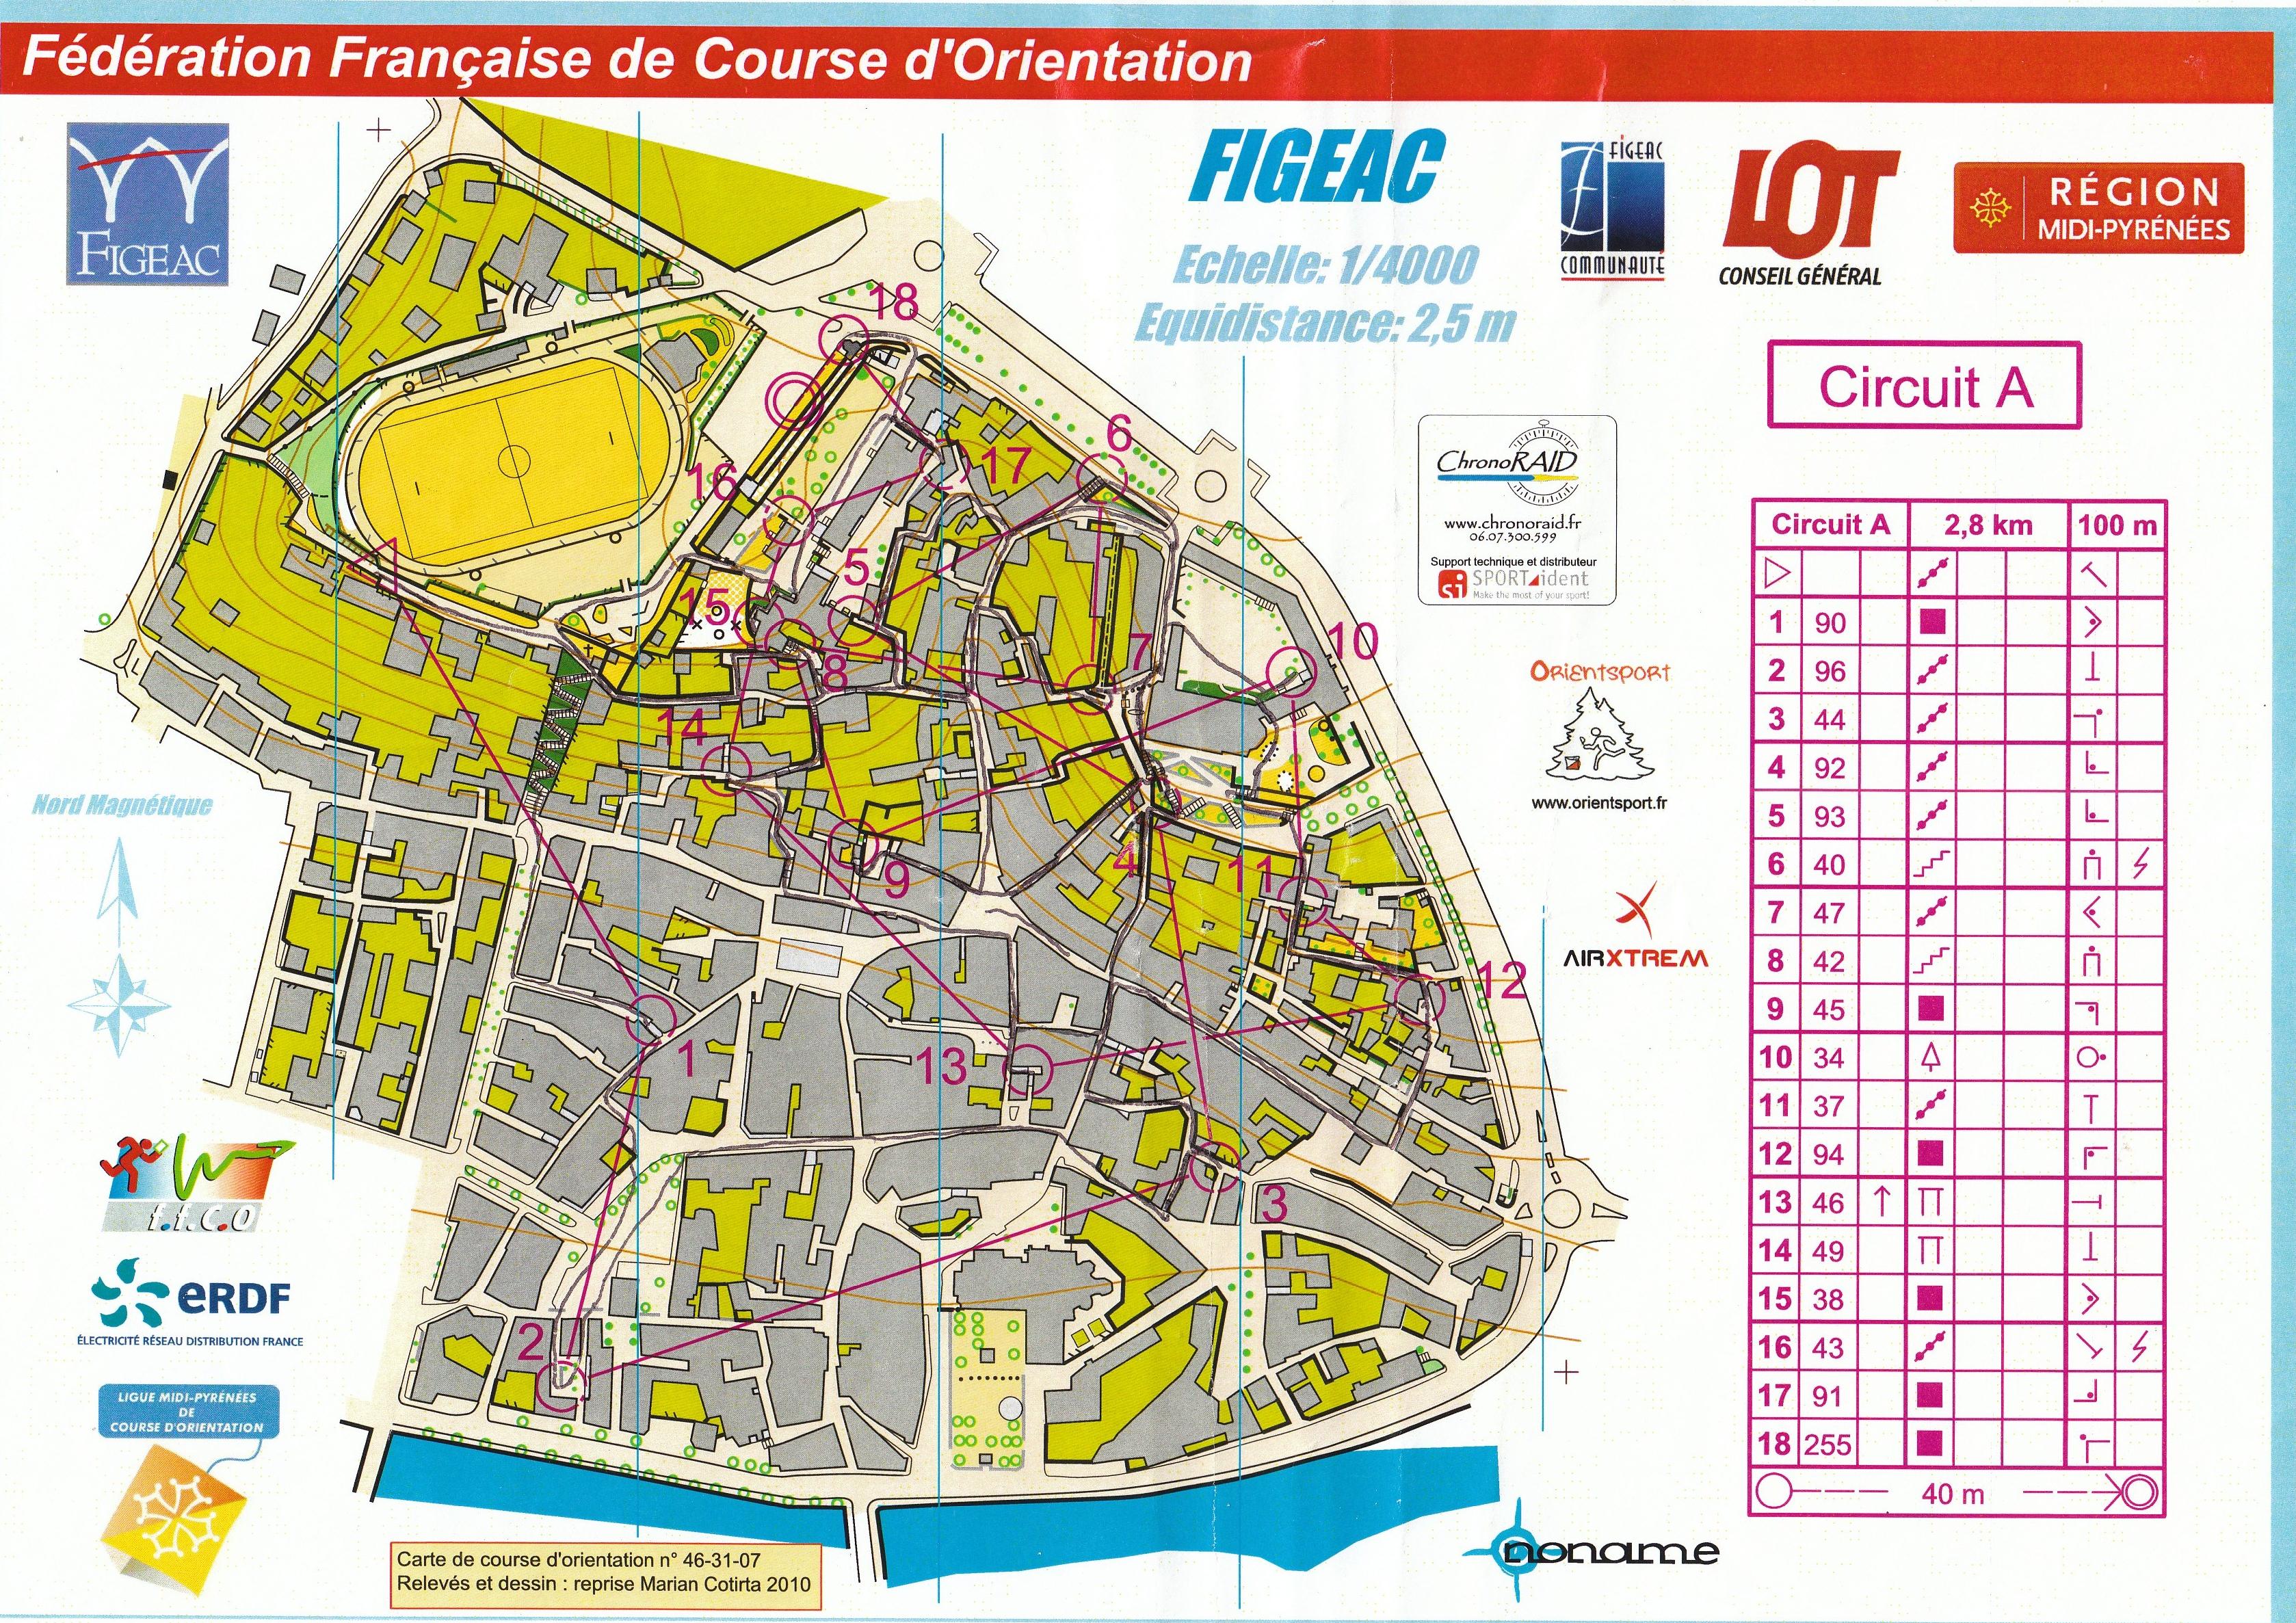 Open Sprint (Finale Championnat de France) (30-10-2010)